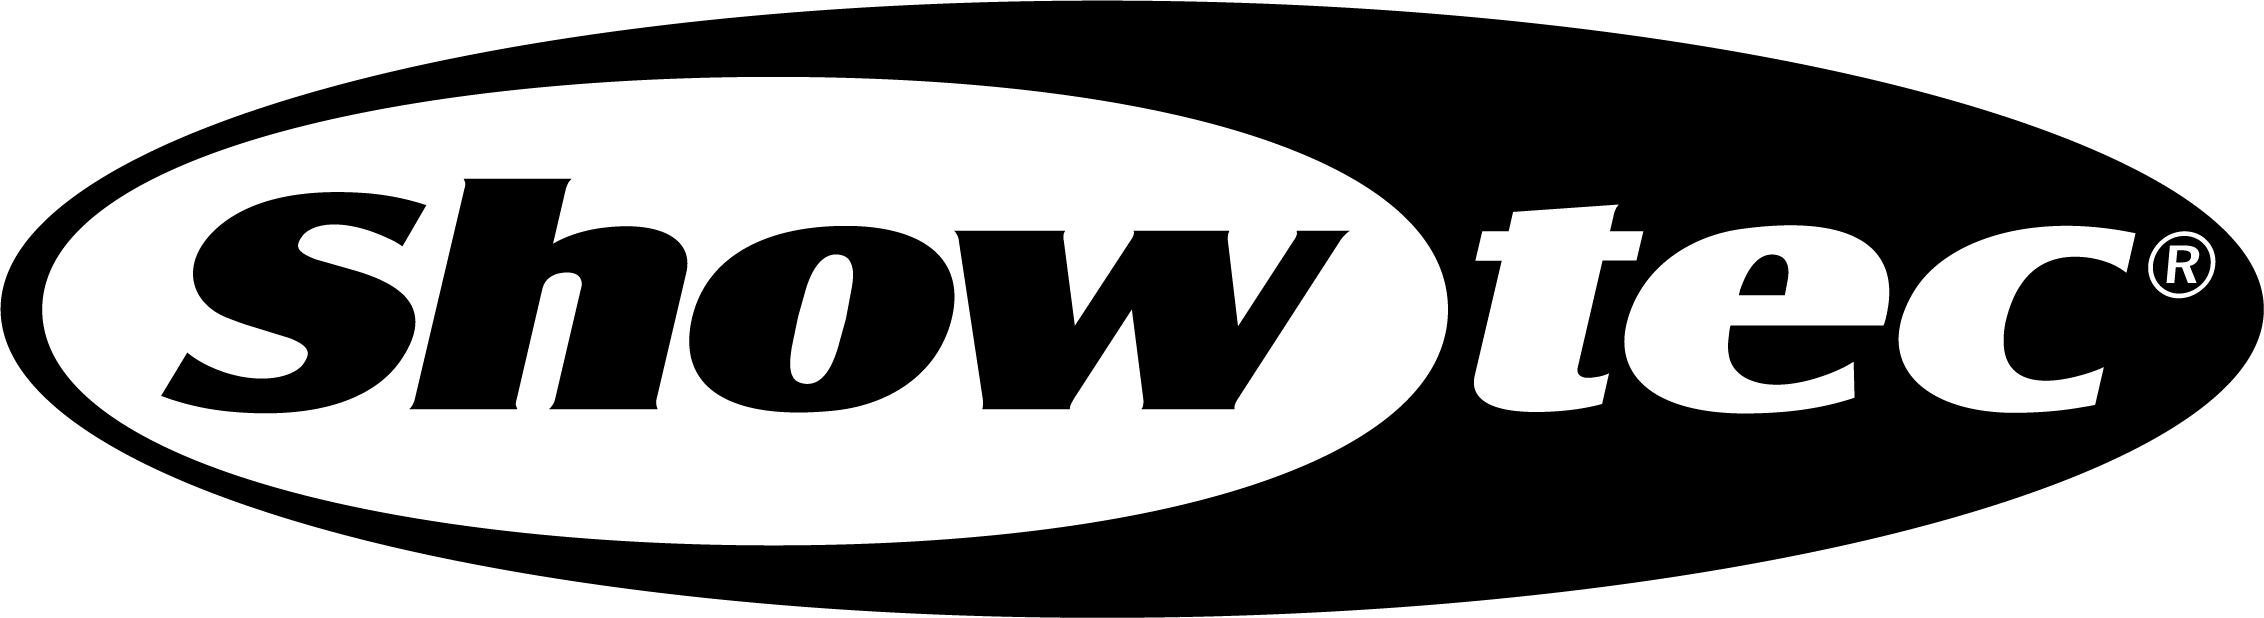 Showtec_Logo_Black